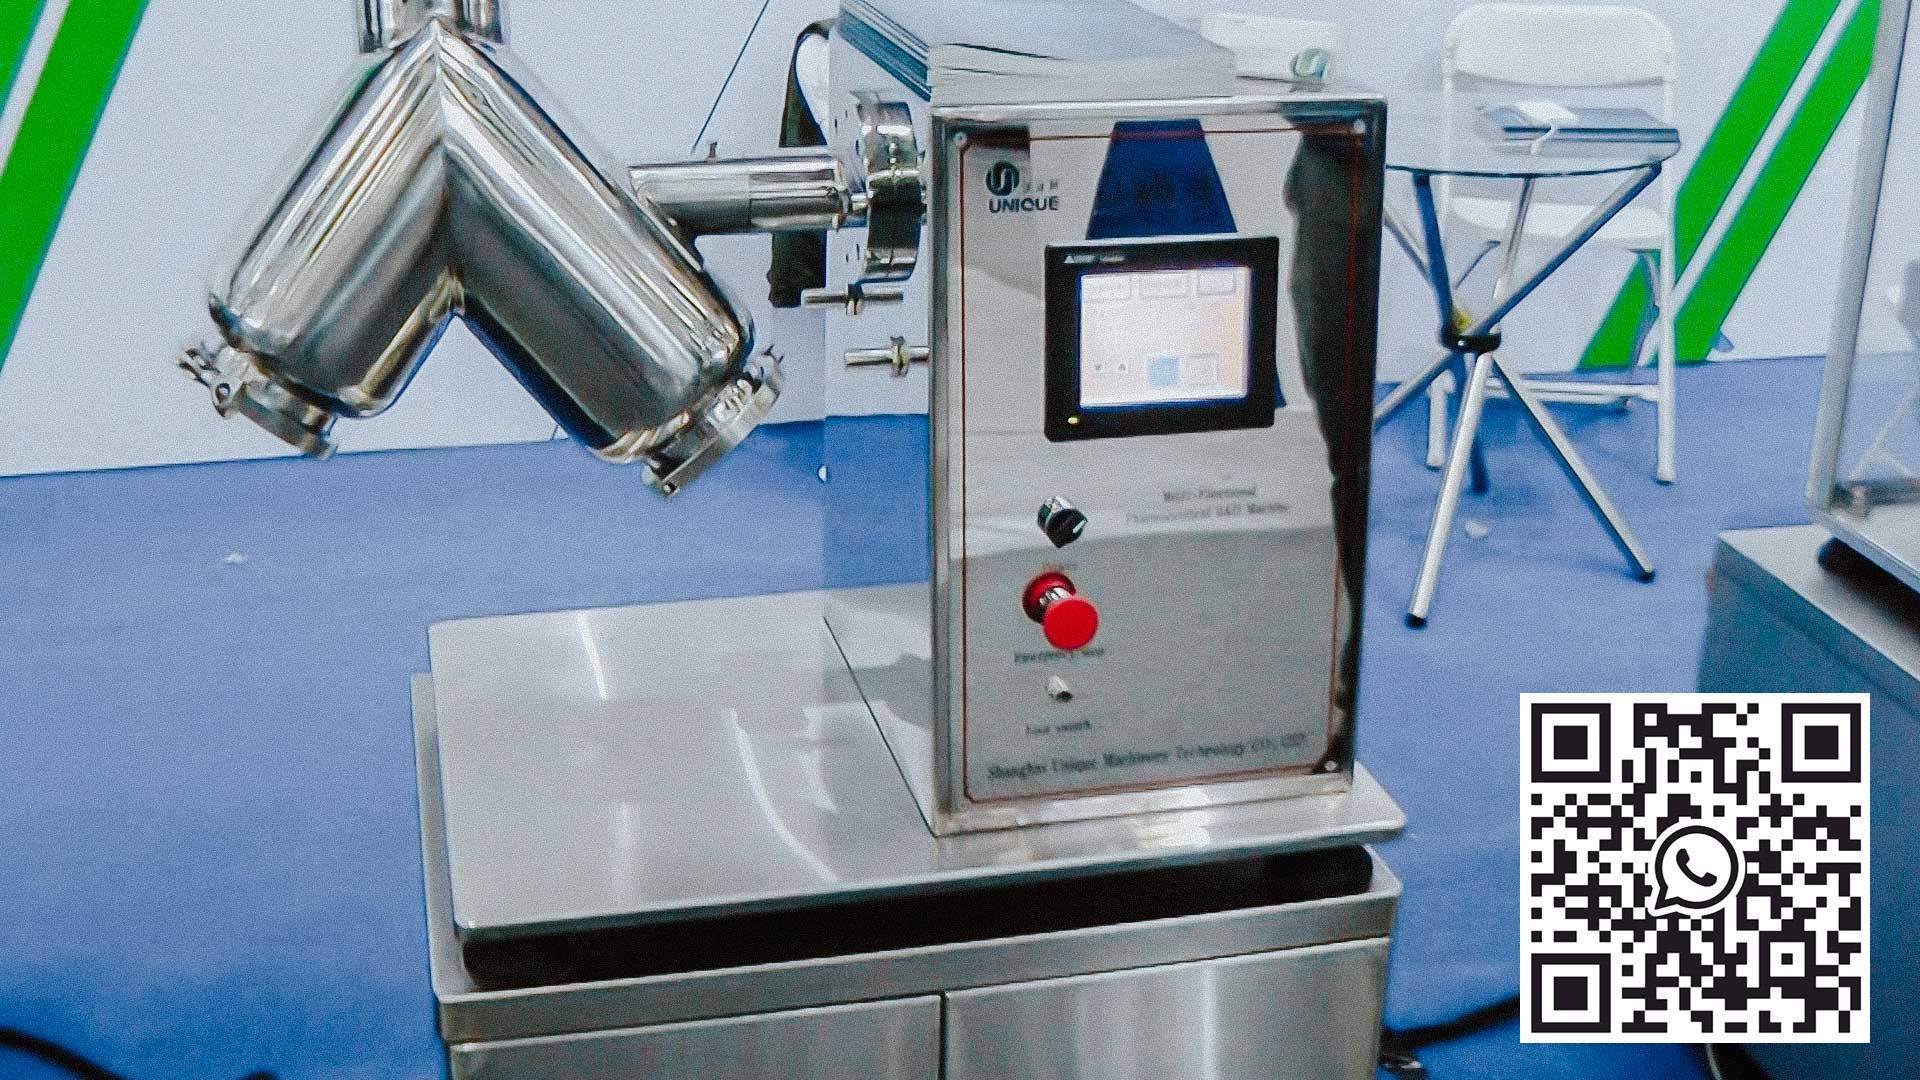 V-mixér pro přípravu směsi prášků používaných pro výrobu léčiv